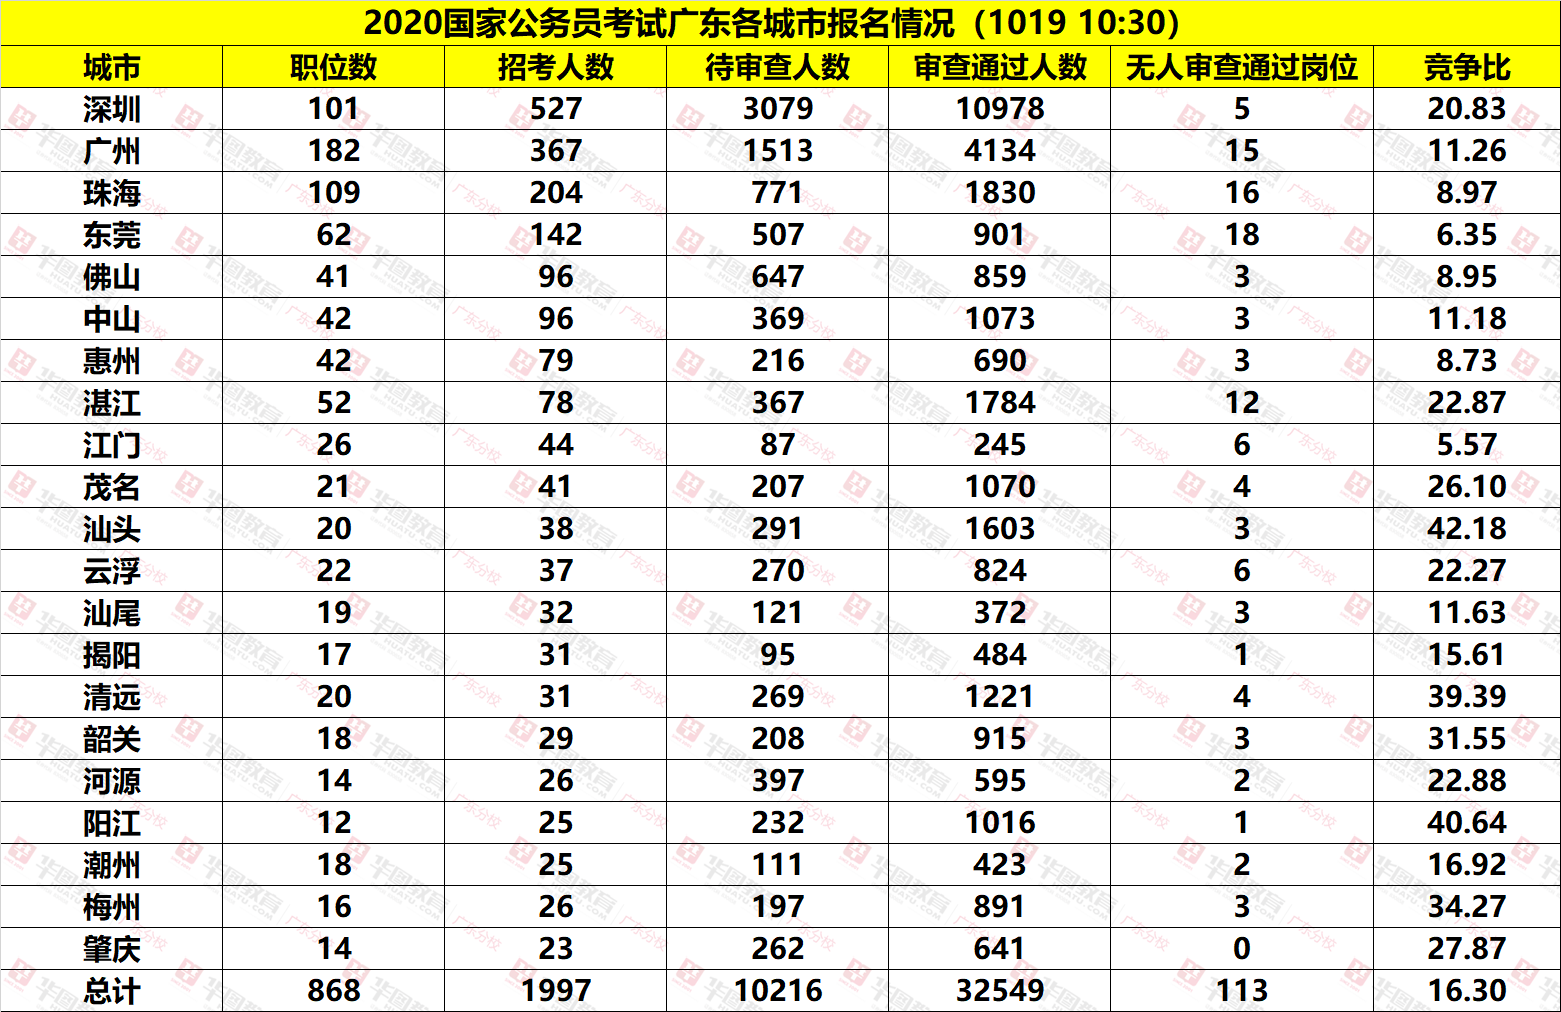 2020国考广东各地市报名人数统计(截至10月19日10:30)